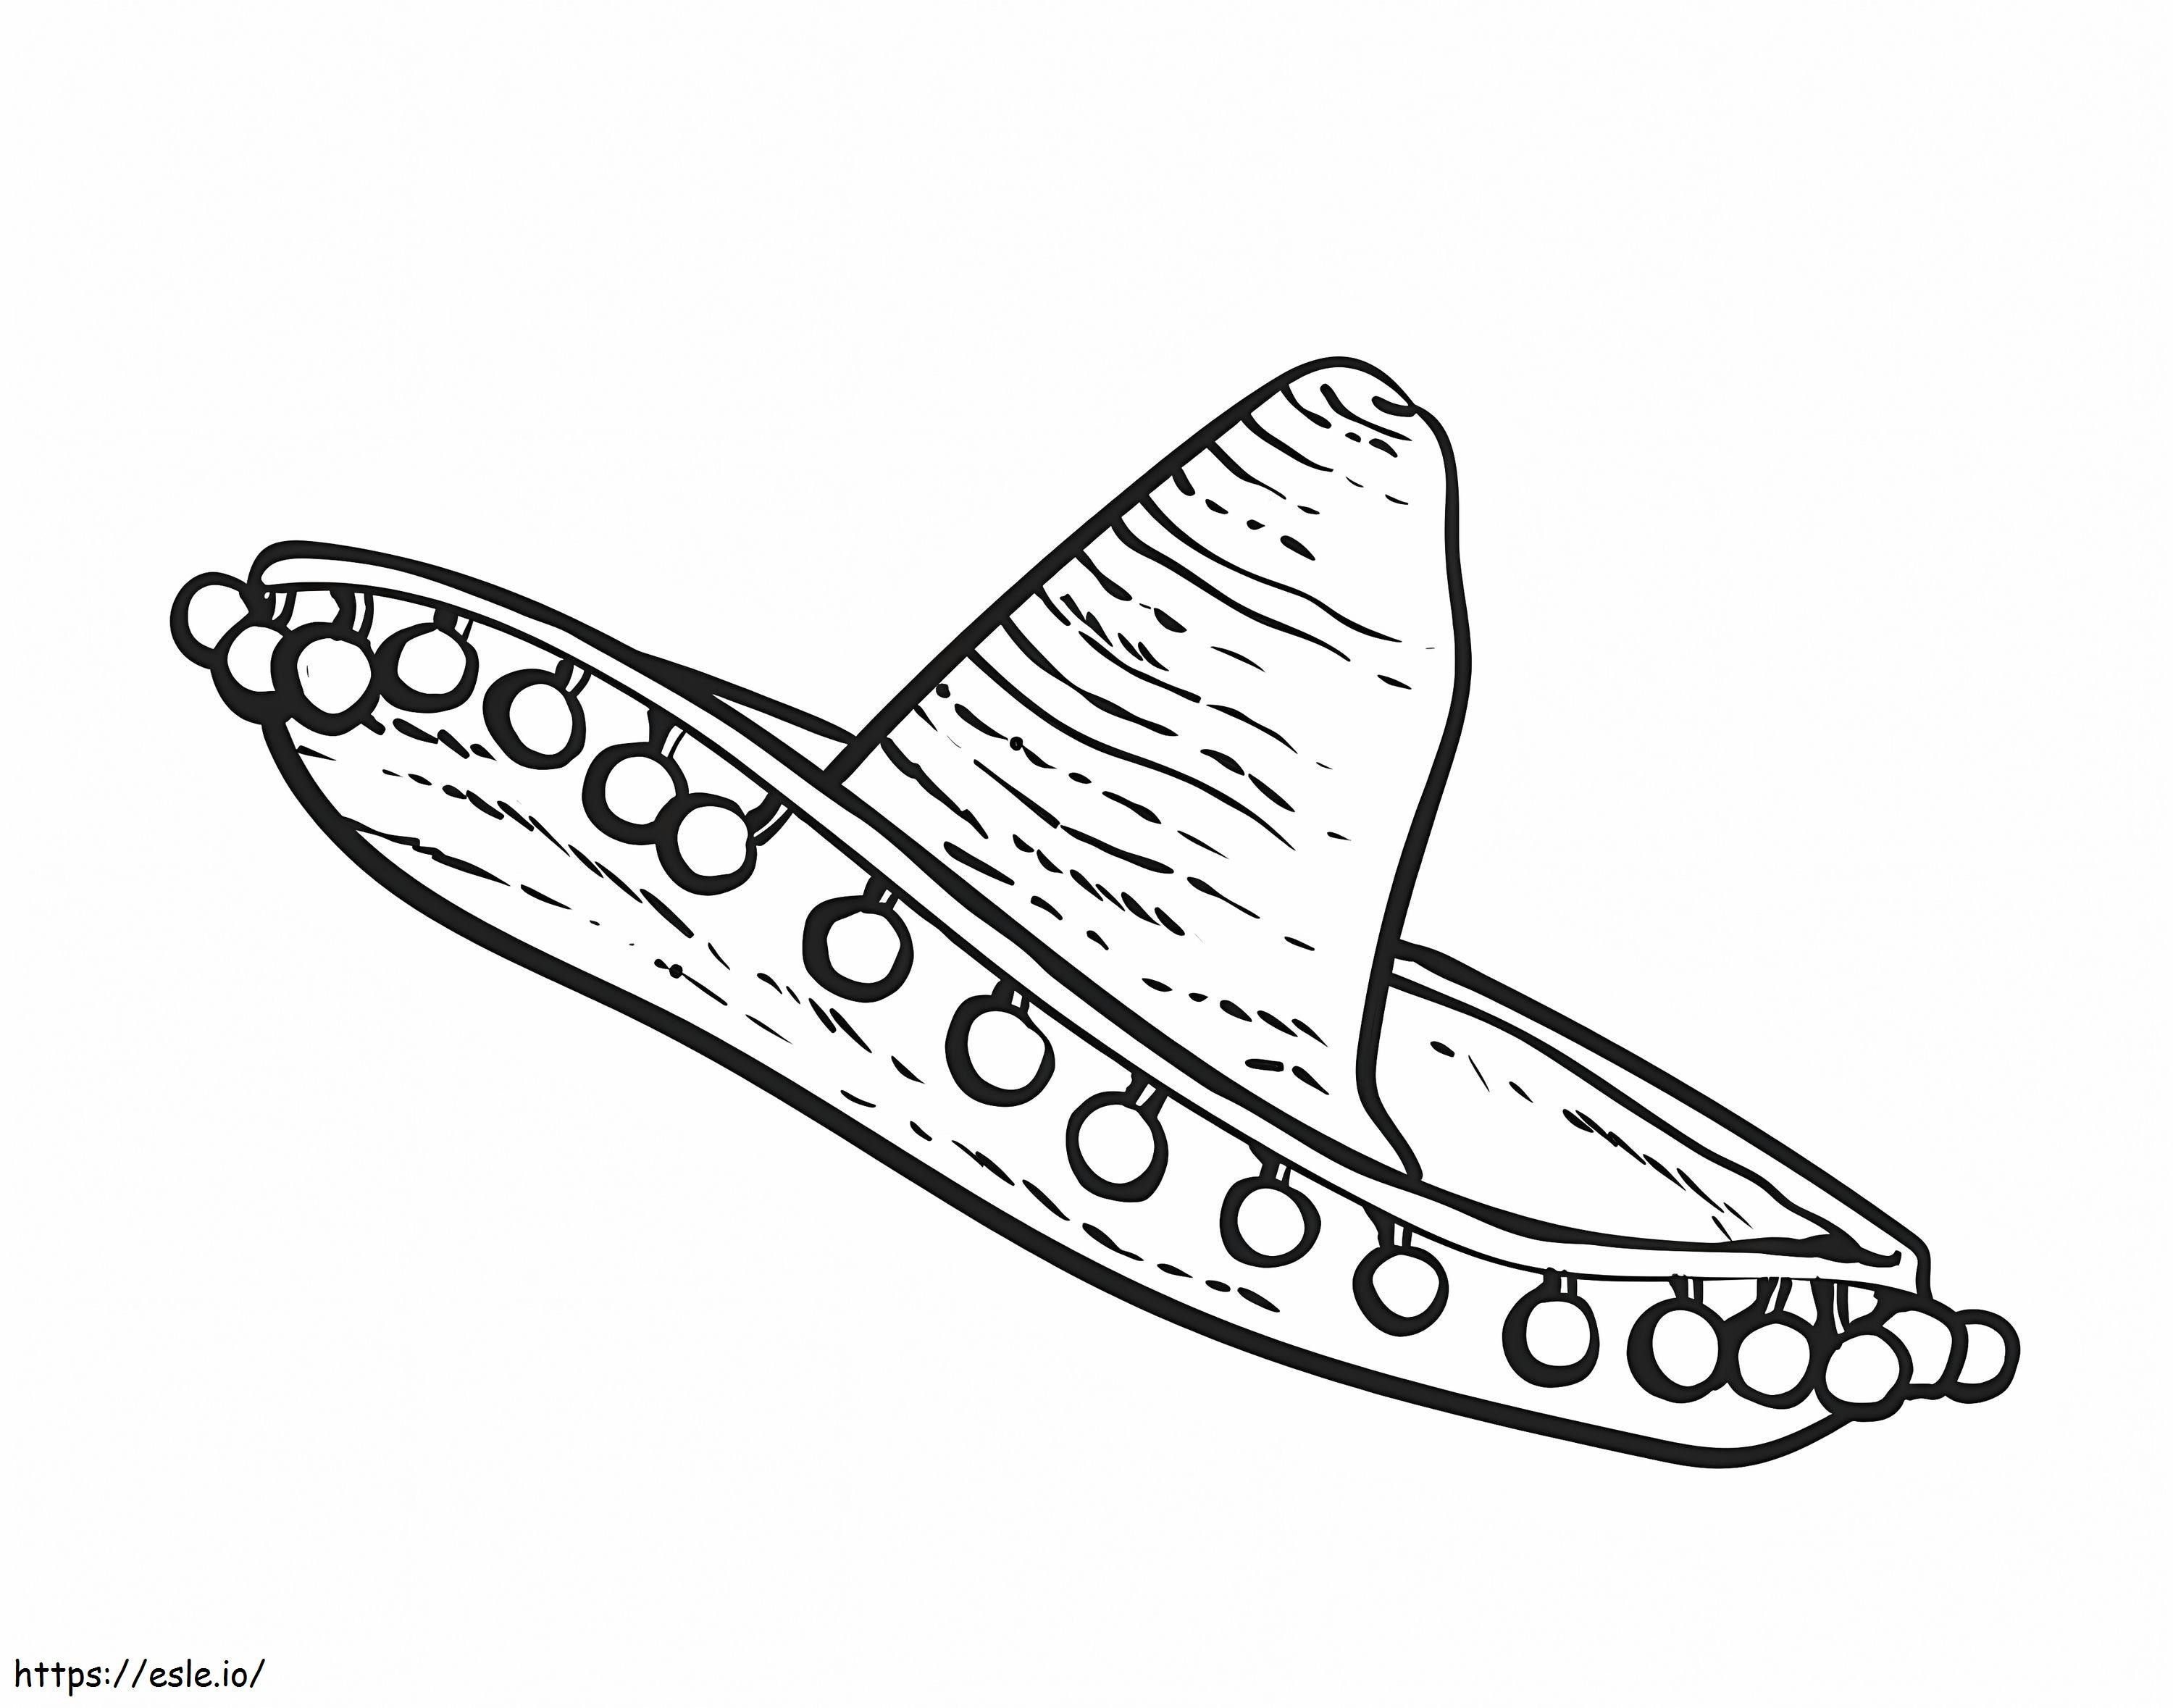 Meksika Şapkası 1 boyama